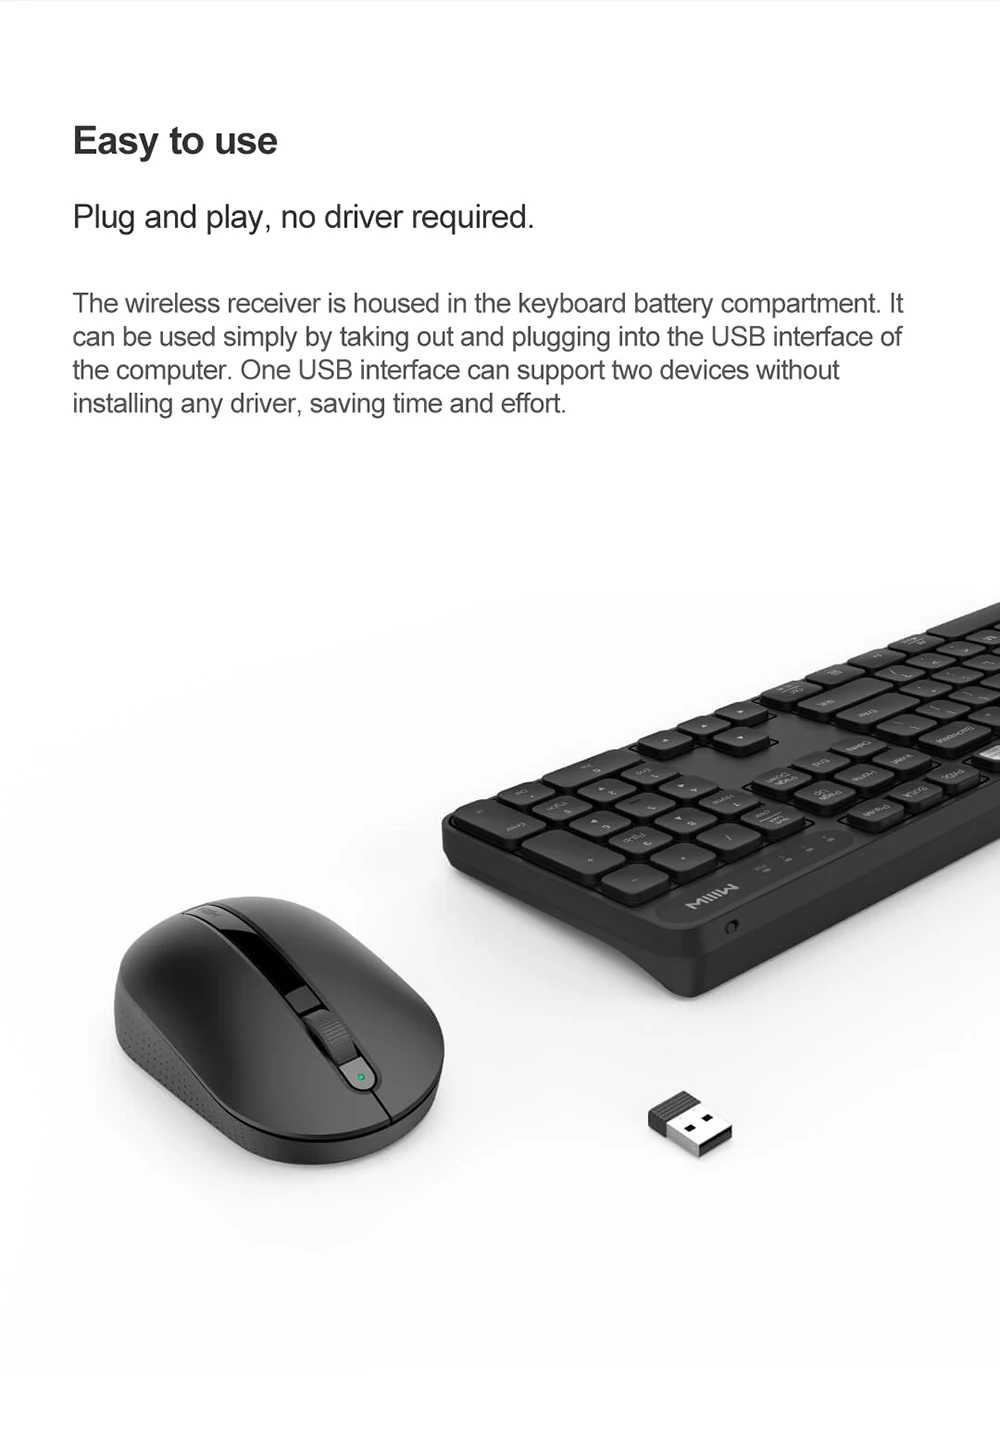 Оригинальный Xiaomi Miiiw Беспроводной офисные мышь Клавиатура Набор РФ 2,4G 1000 точек/дюйм ноутбук мышь клавиатура для MAC офиса